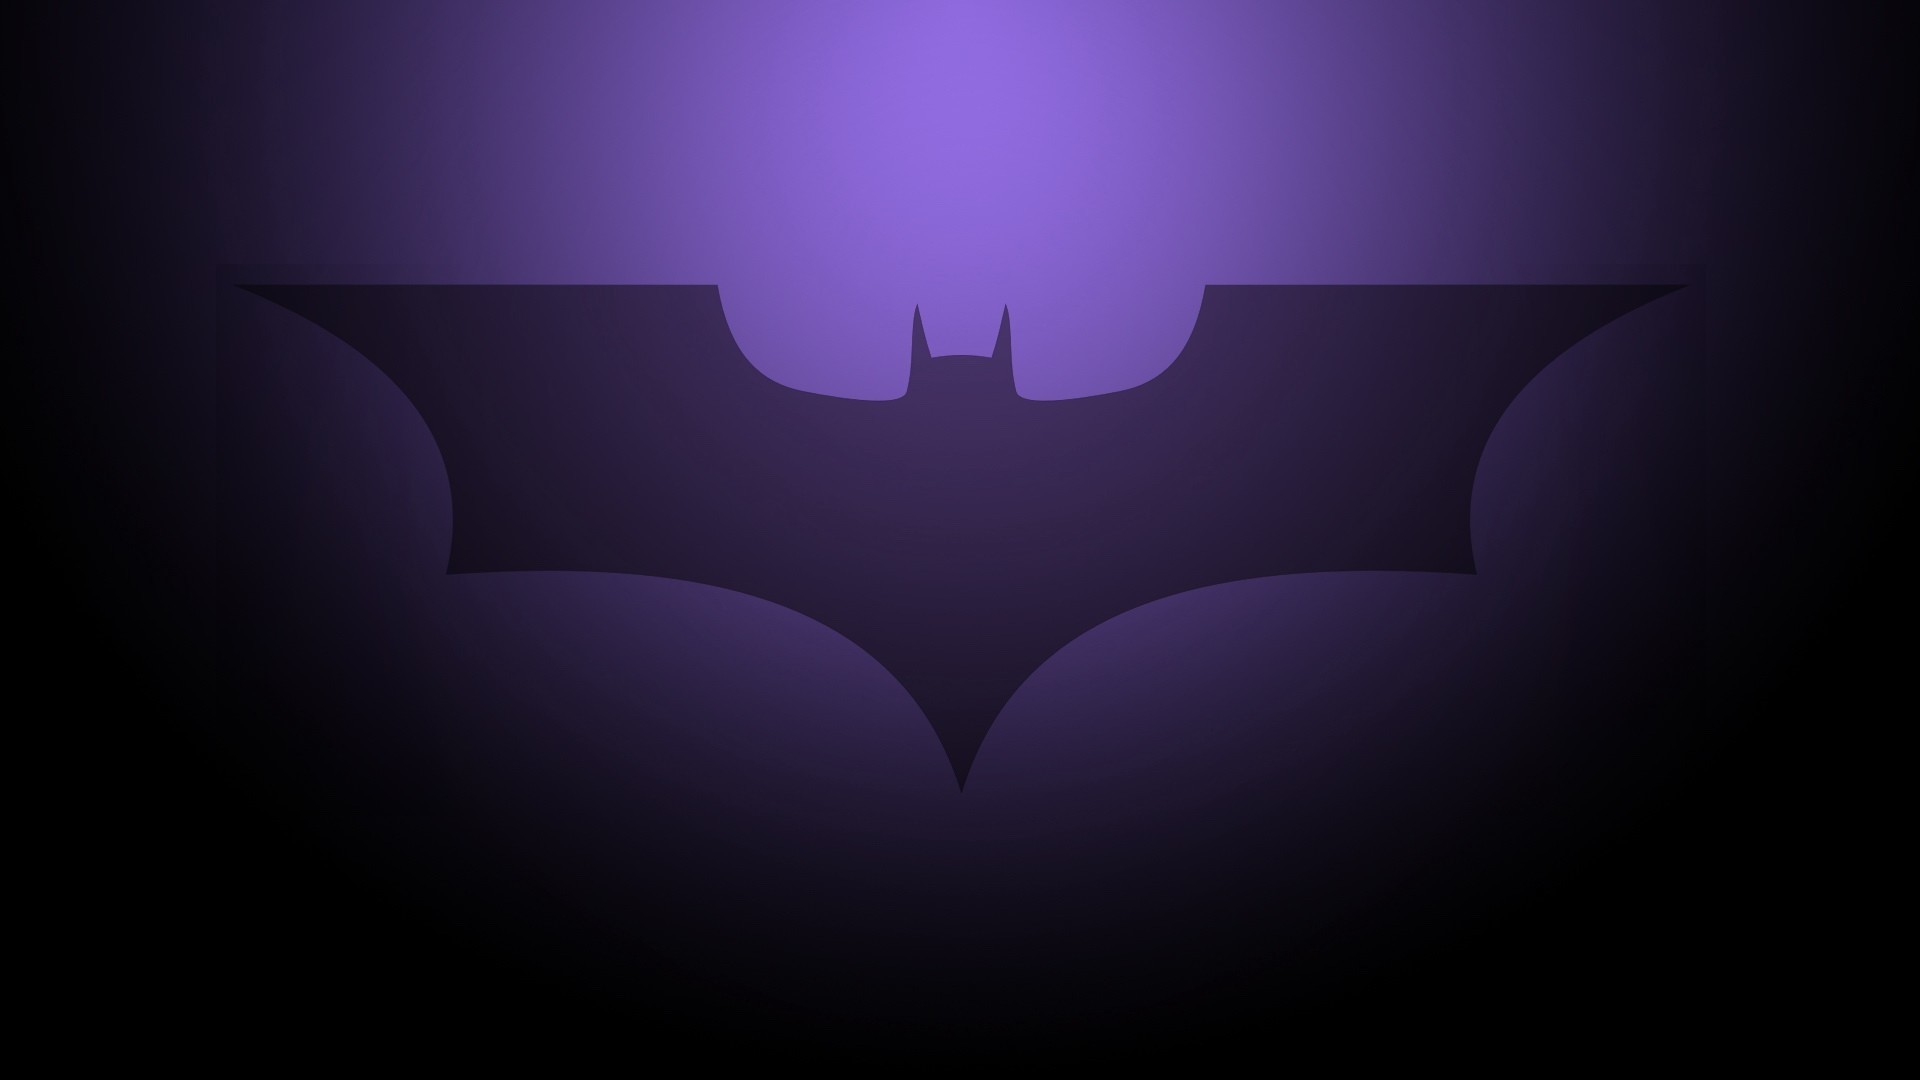 Batman Hd Wallpaper Download For Mobile Phone